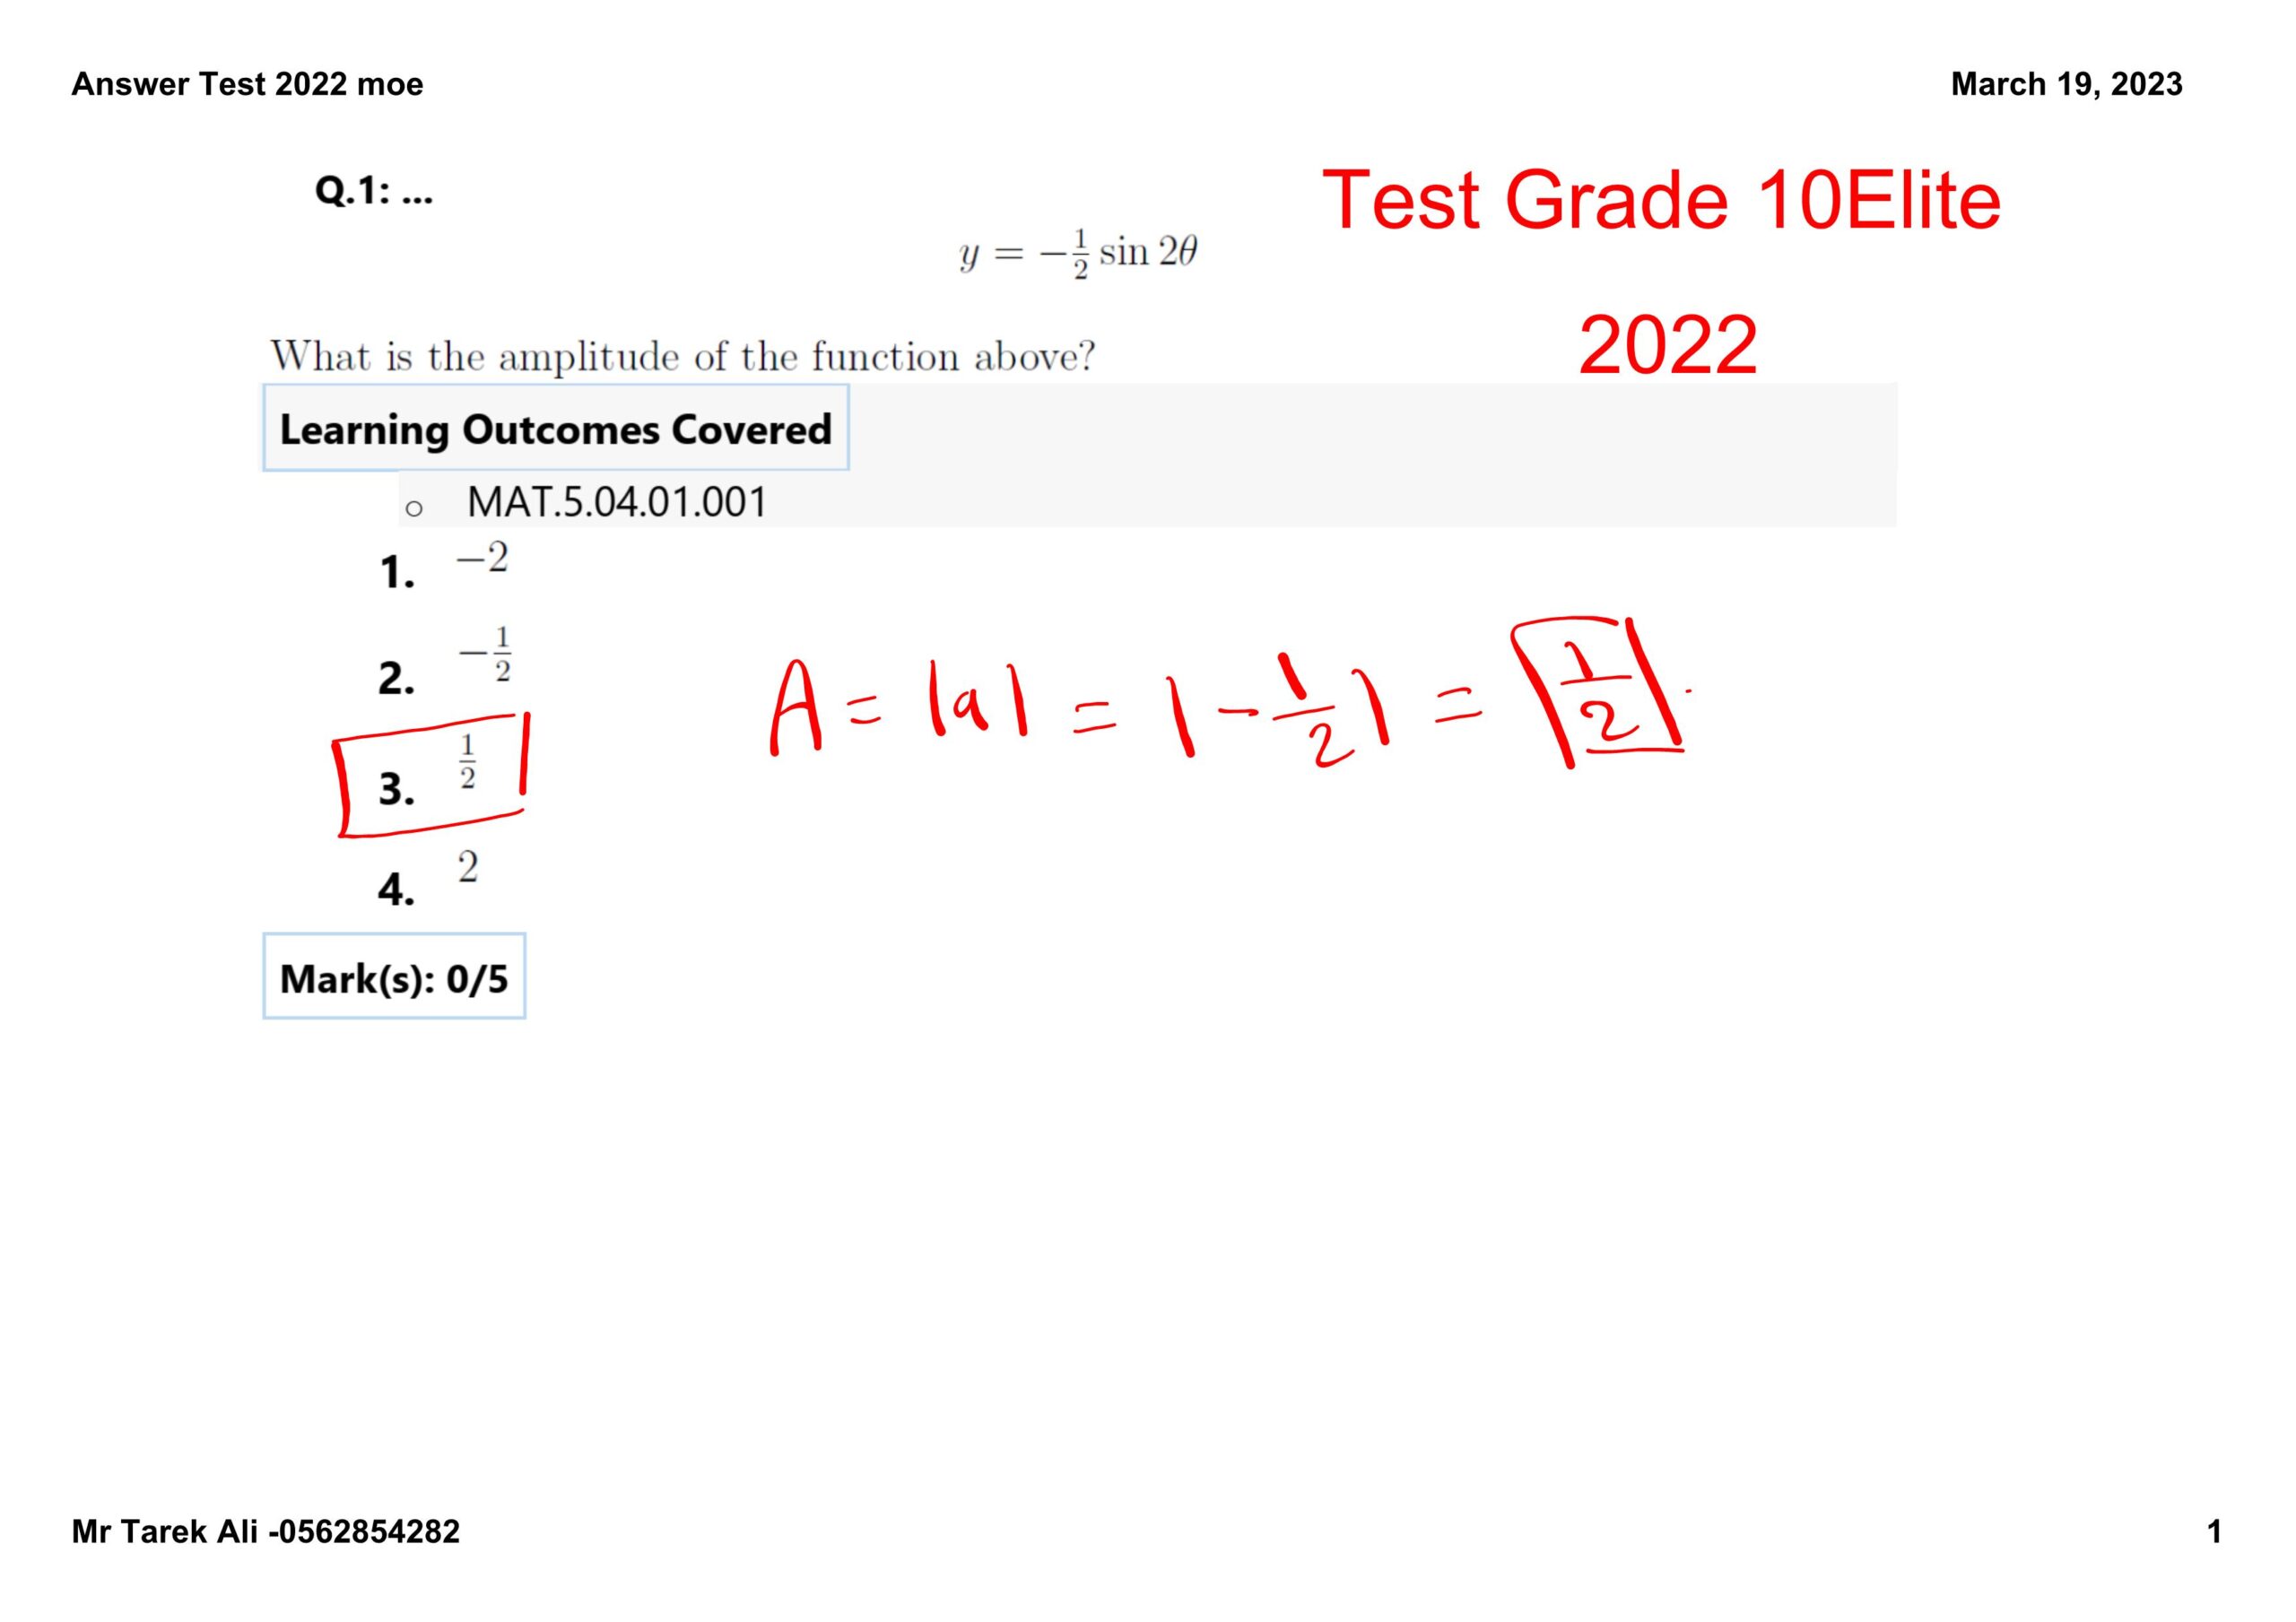 حل امتحان نهاية الفصل الدراسي الثاني الرياضيات المتكاملة الصف العاشر نخبة 2021-2022